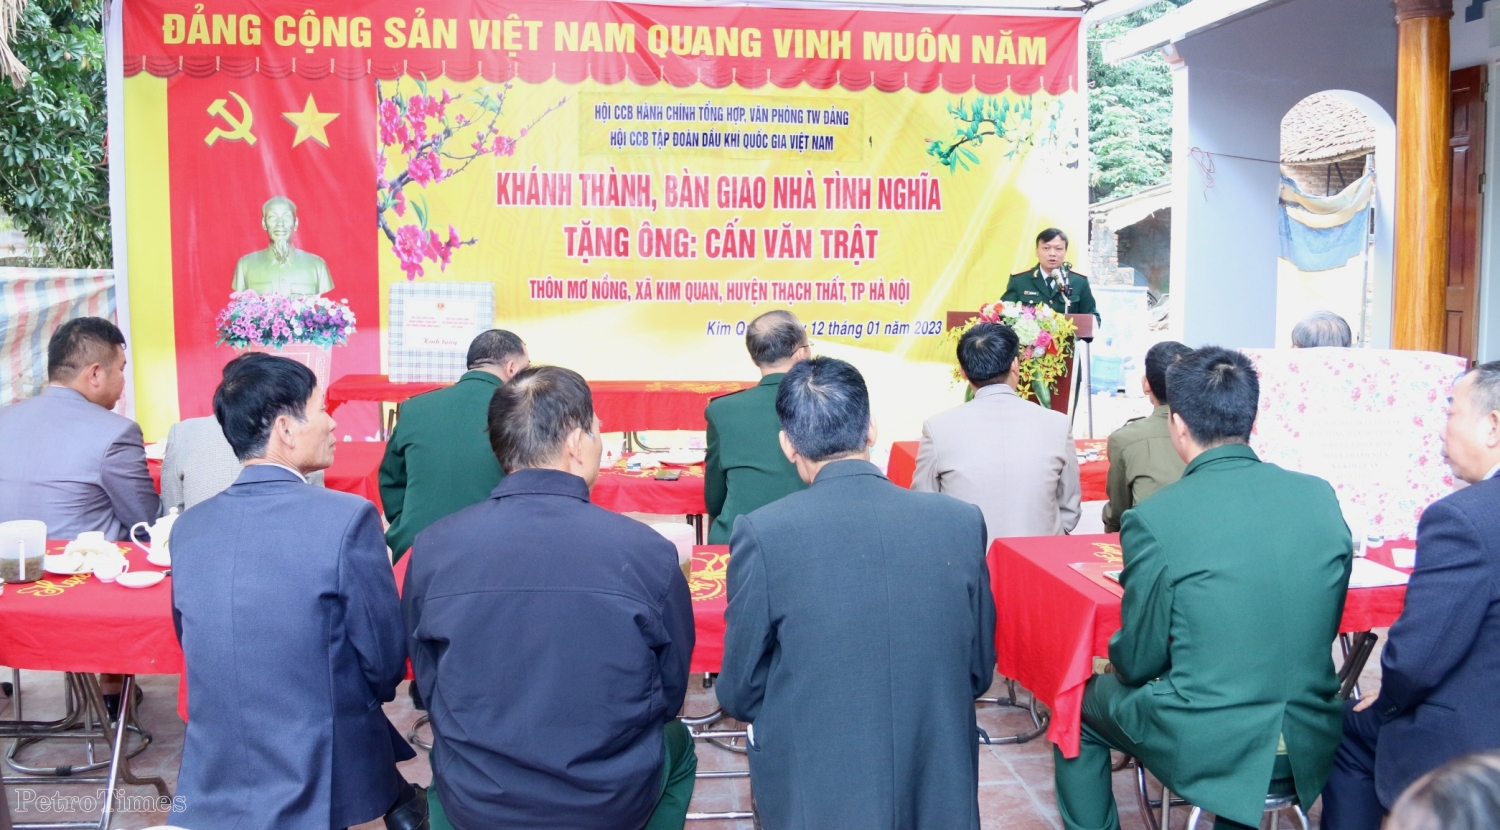 Hội CCB Tập đoàn trao nhà “Nghĩa tình đồng đội” tại Thạch Thất, Hà Nội